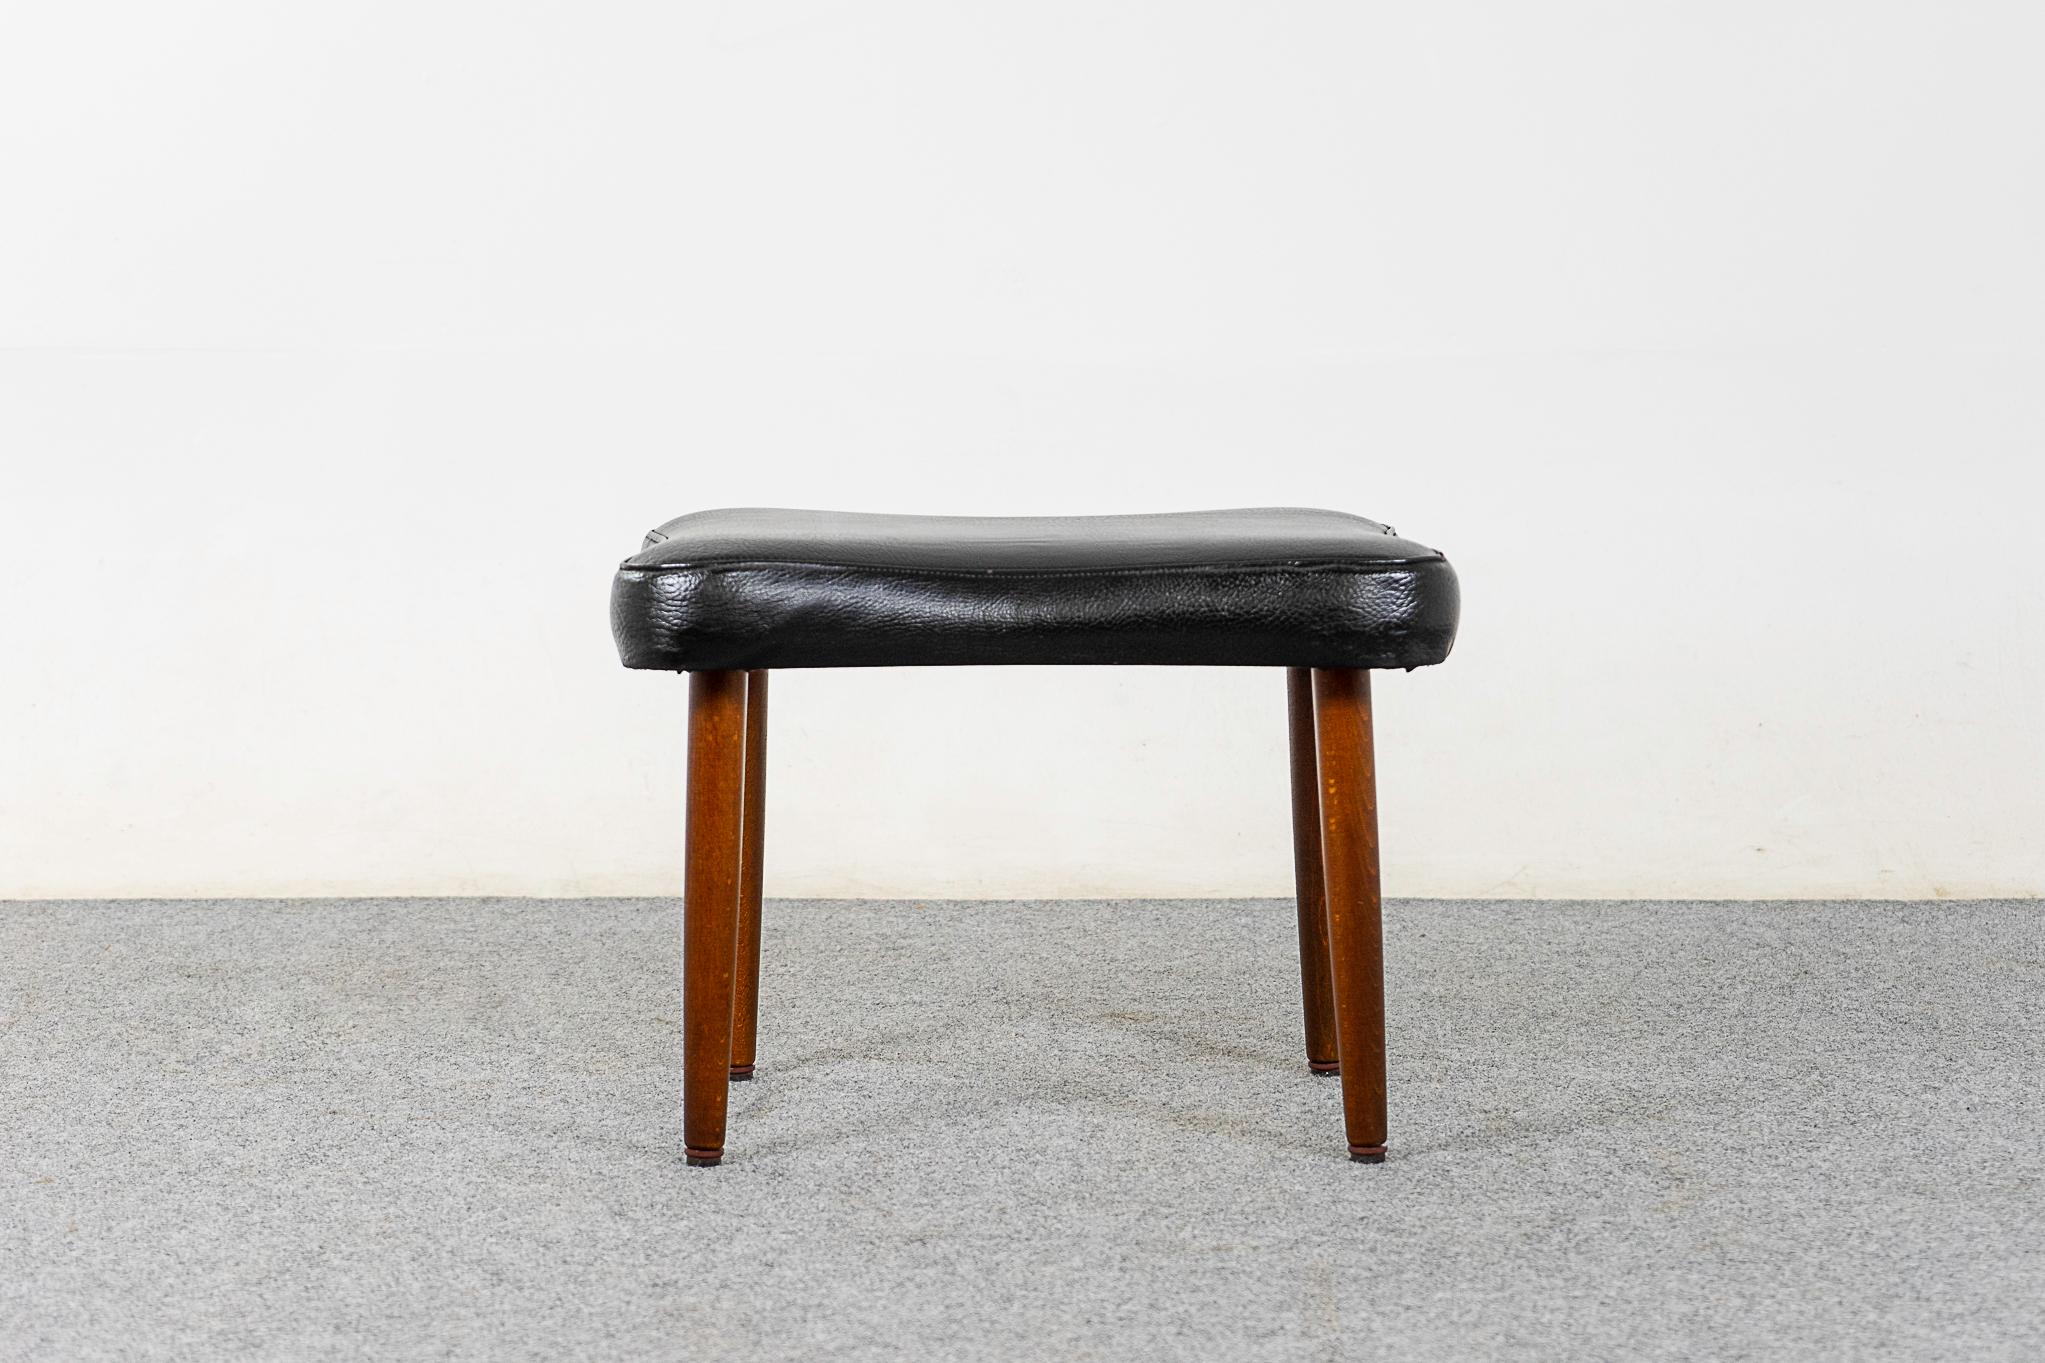 Fußbank aus Buchenholz, um 1960. Kompaktes Design, kann mit praktisch jedem Sitzmöbel verwendet werden und ist leicht im Haus zu bewegen.

Bitte erkundigen Sie sich nach den Tarifen für Fern- und Auslandsversand.